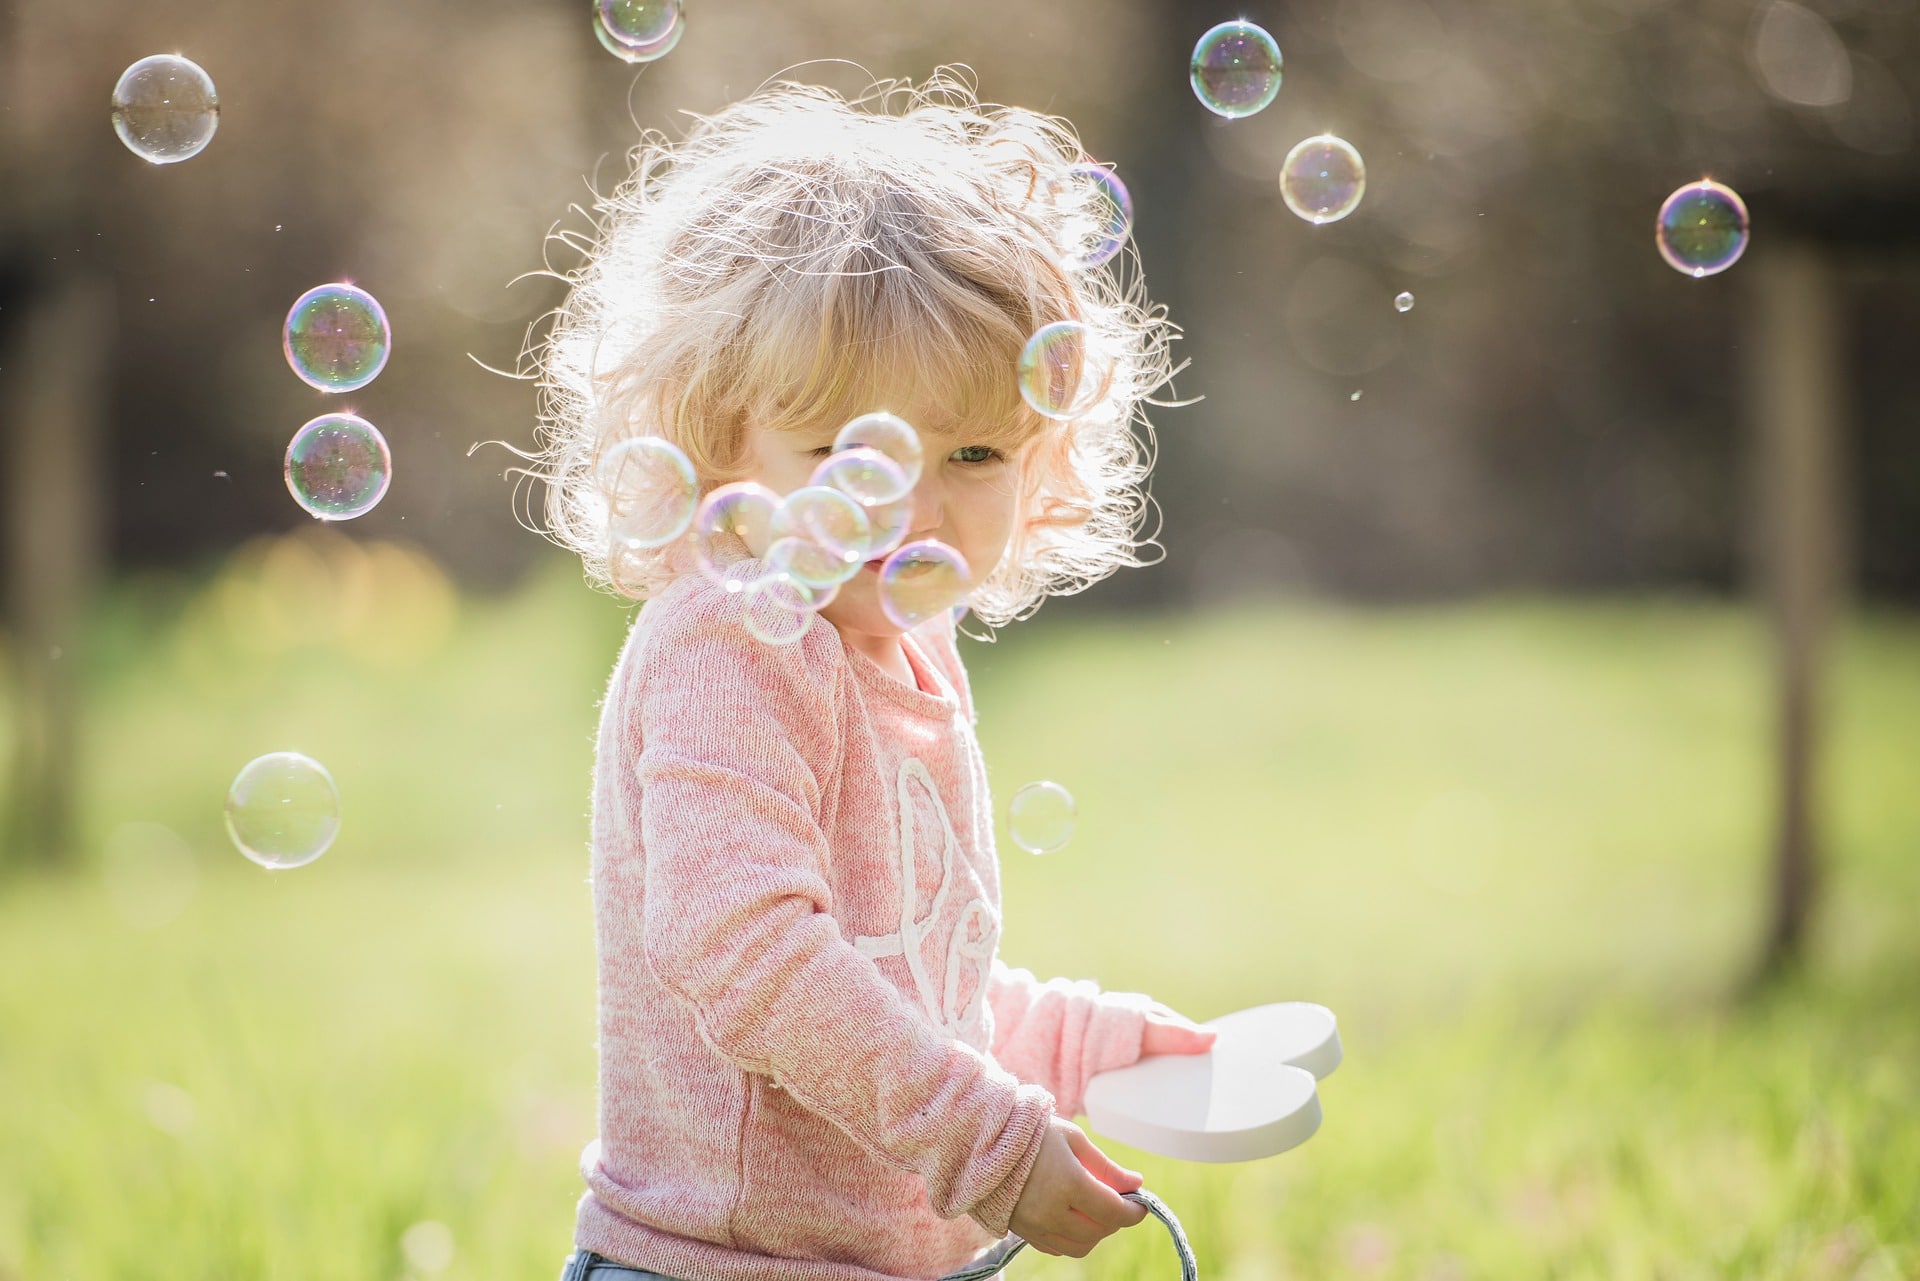 Фото детей с мыльными пузырями